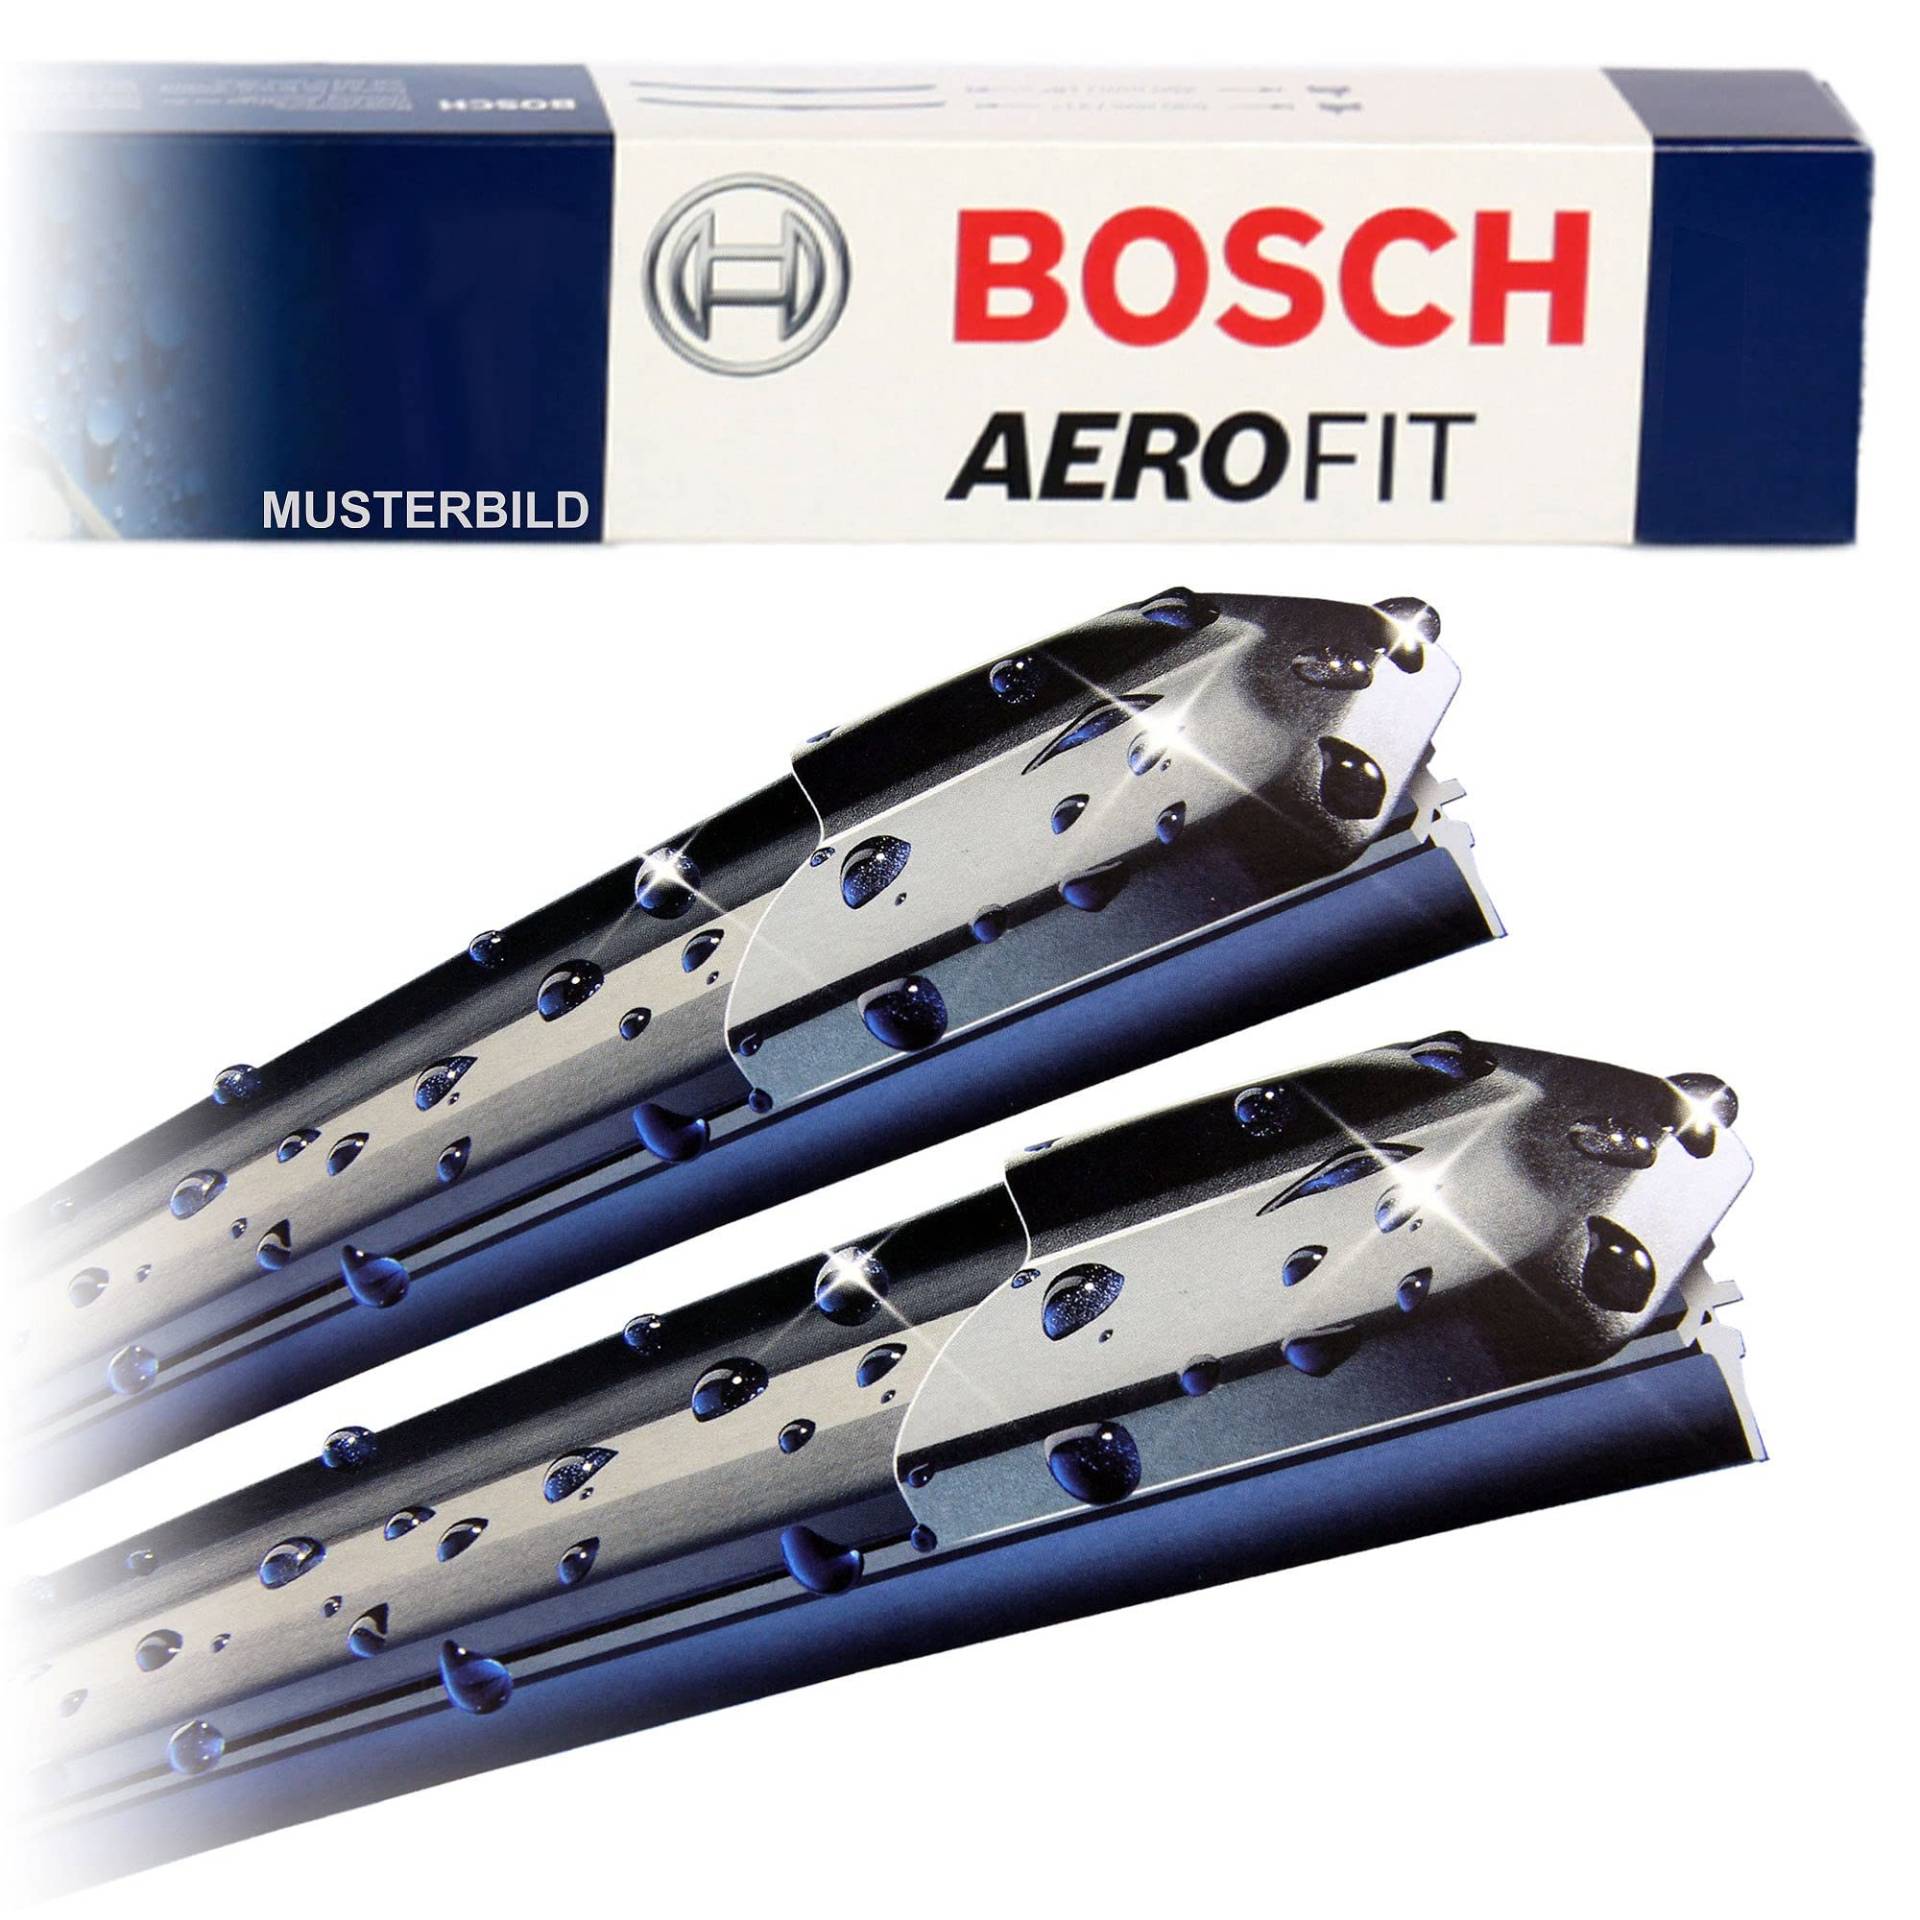 Bosch Scheibenwischer Heckwischer Vorne + Hinten, Aerotwin AF531 + Aerotwin A350H , Wischer Scheibenwischerblätter Set für Frontscheibe und Heckscheibe von BOSCH Bundle